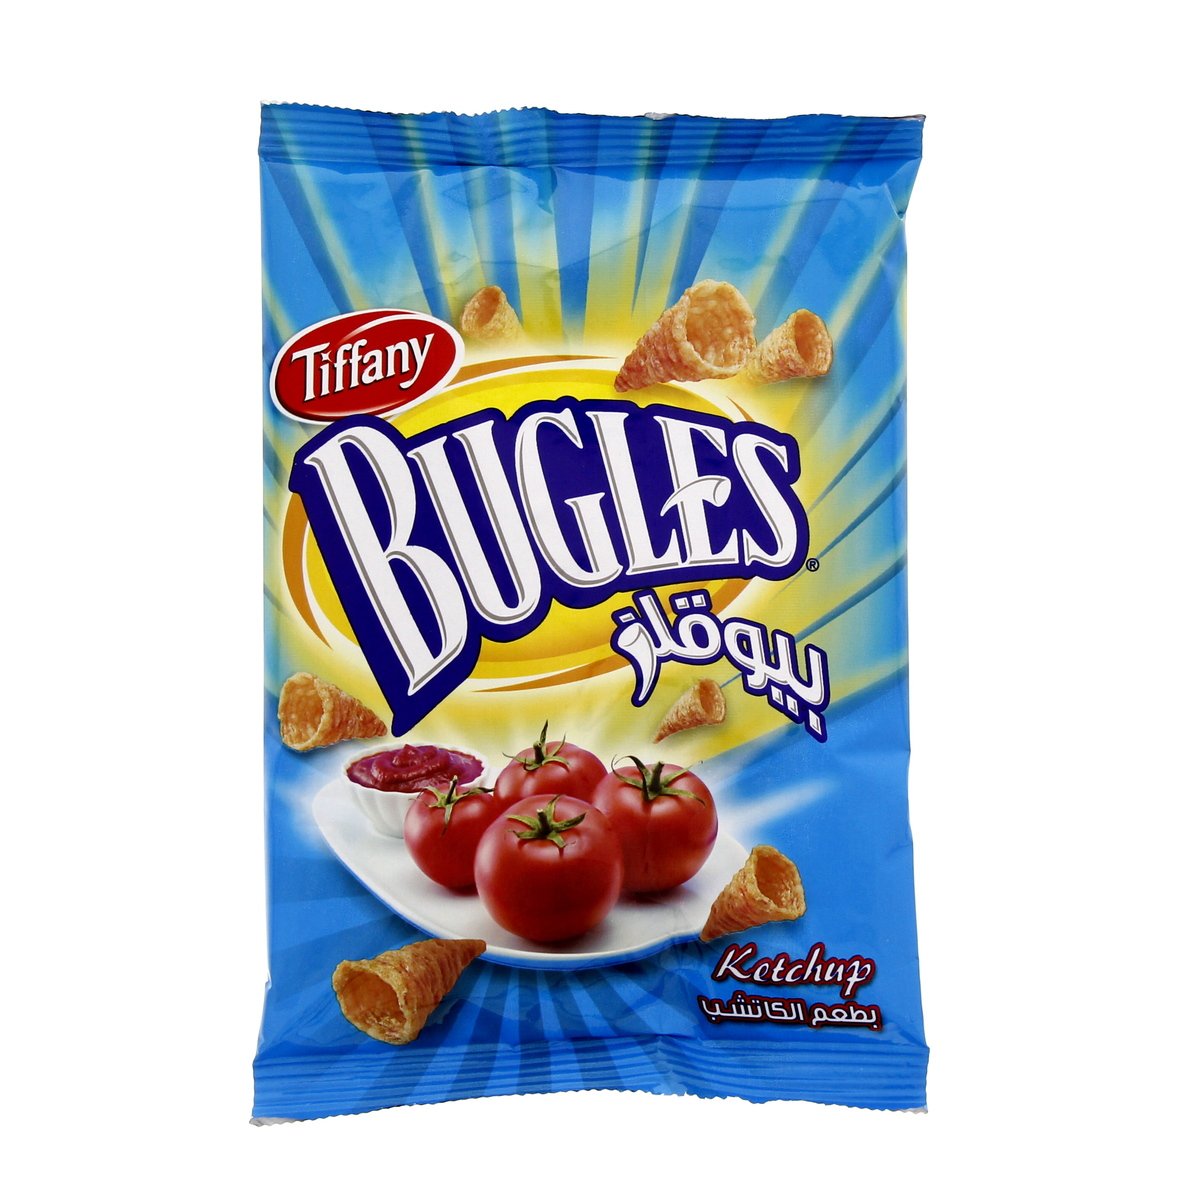 Tiffany Bugles Ketchup 12 x 25 g